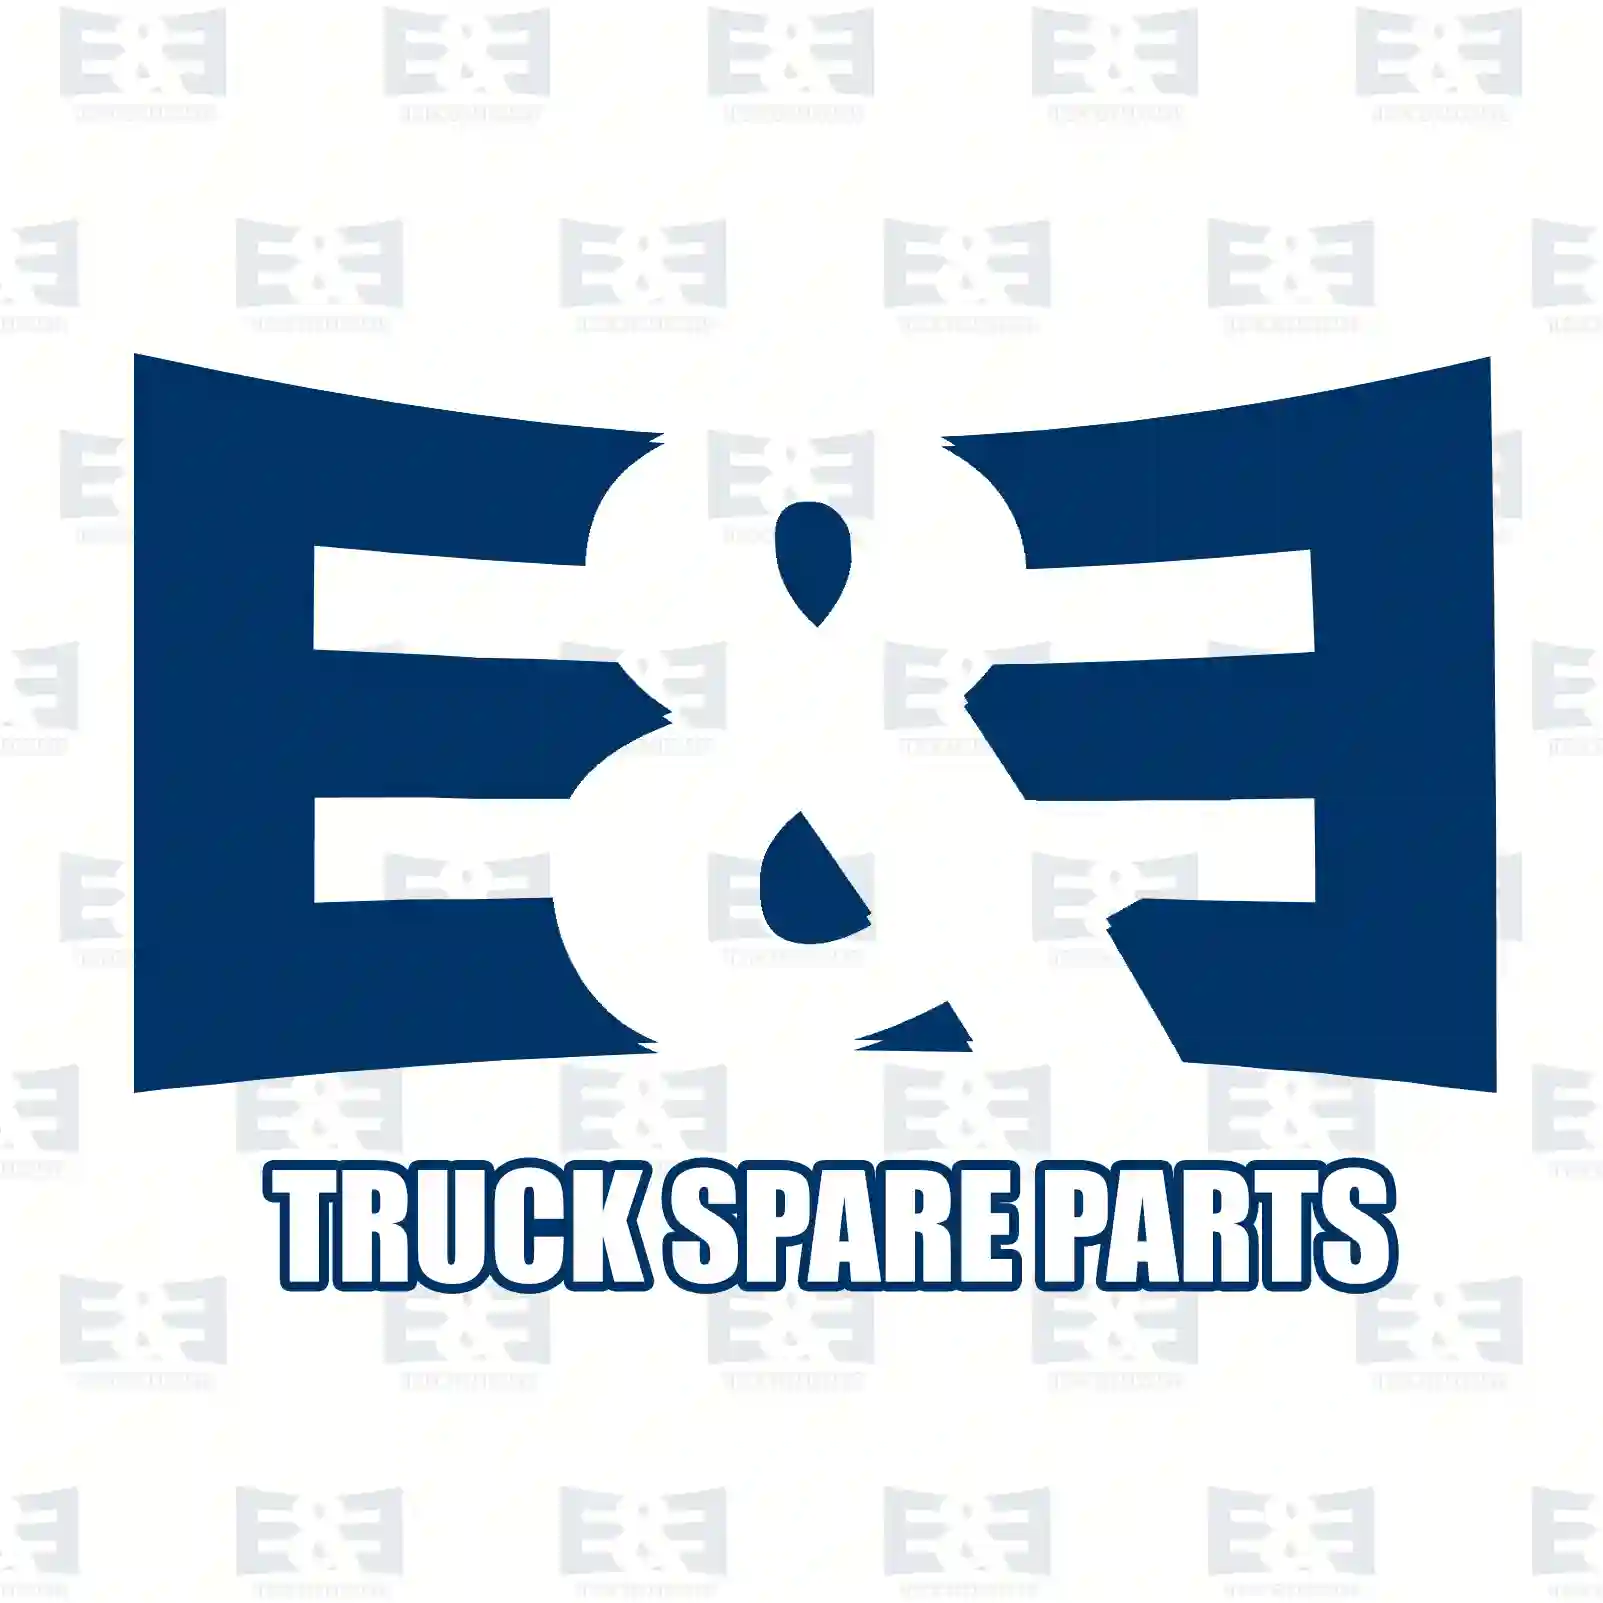 Turbocharger, 2E2200011, 21952490, 21989961, 85013296 ||  2E2200011 E&E Truck Spare Parts | Truck Spare Parts, Auotomotive Spare Parts Turbocharger, 2E2200011, 21952490, 21989961, 85013296 ||  2E2200011 E&E Truck Spare Parts | Truck Spare Parts, Auotomotive Spare Parts